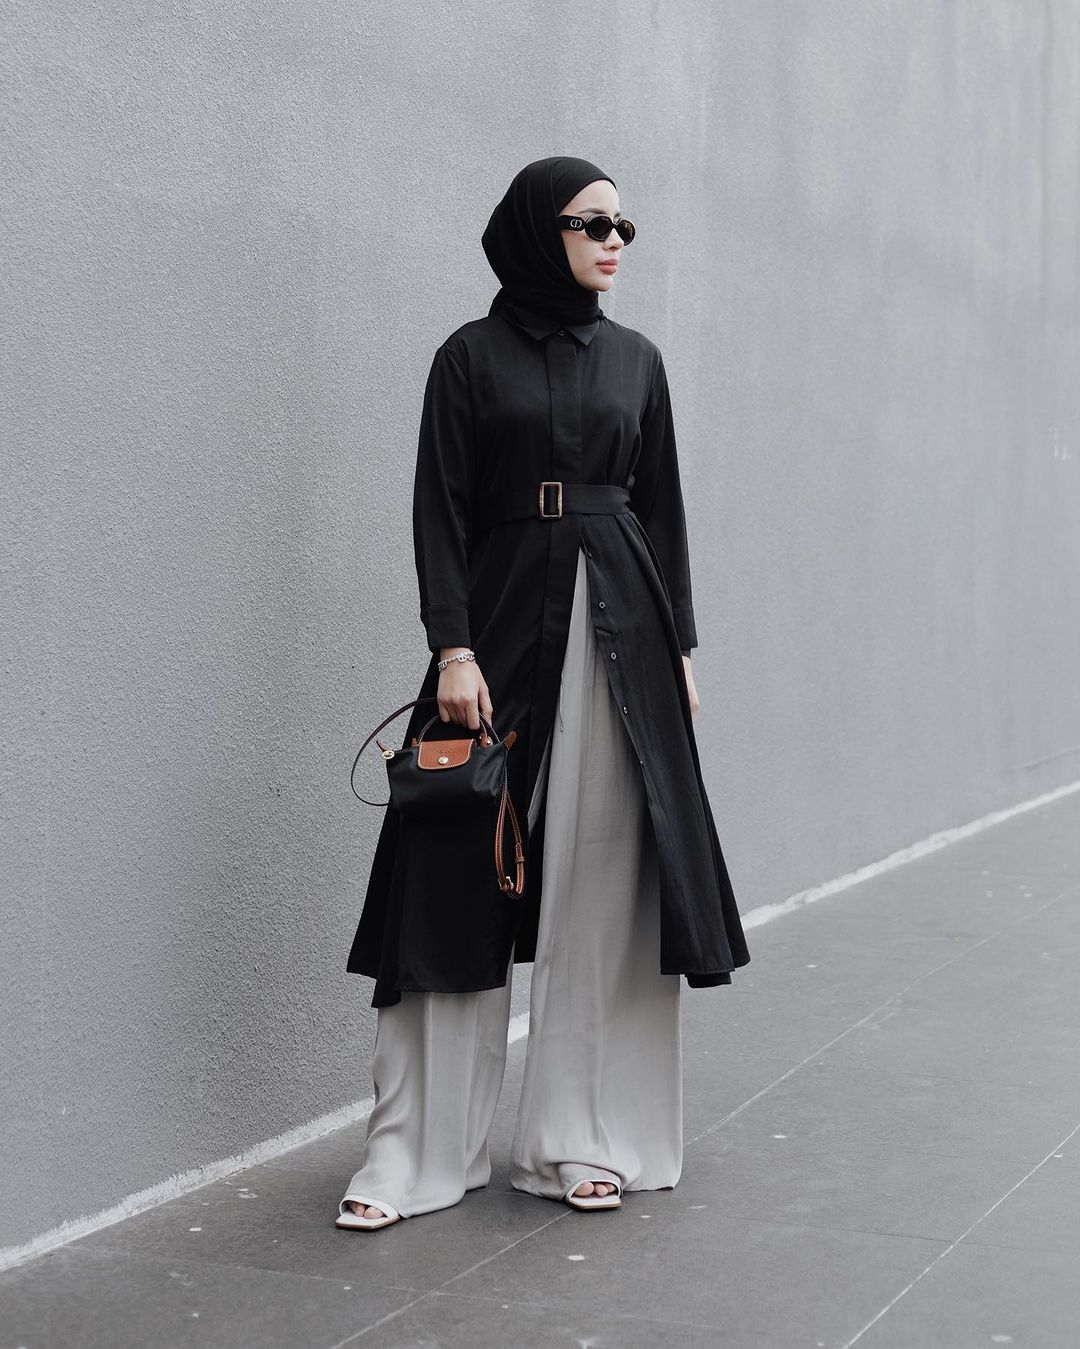 Style hijab, Cewek mamba